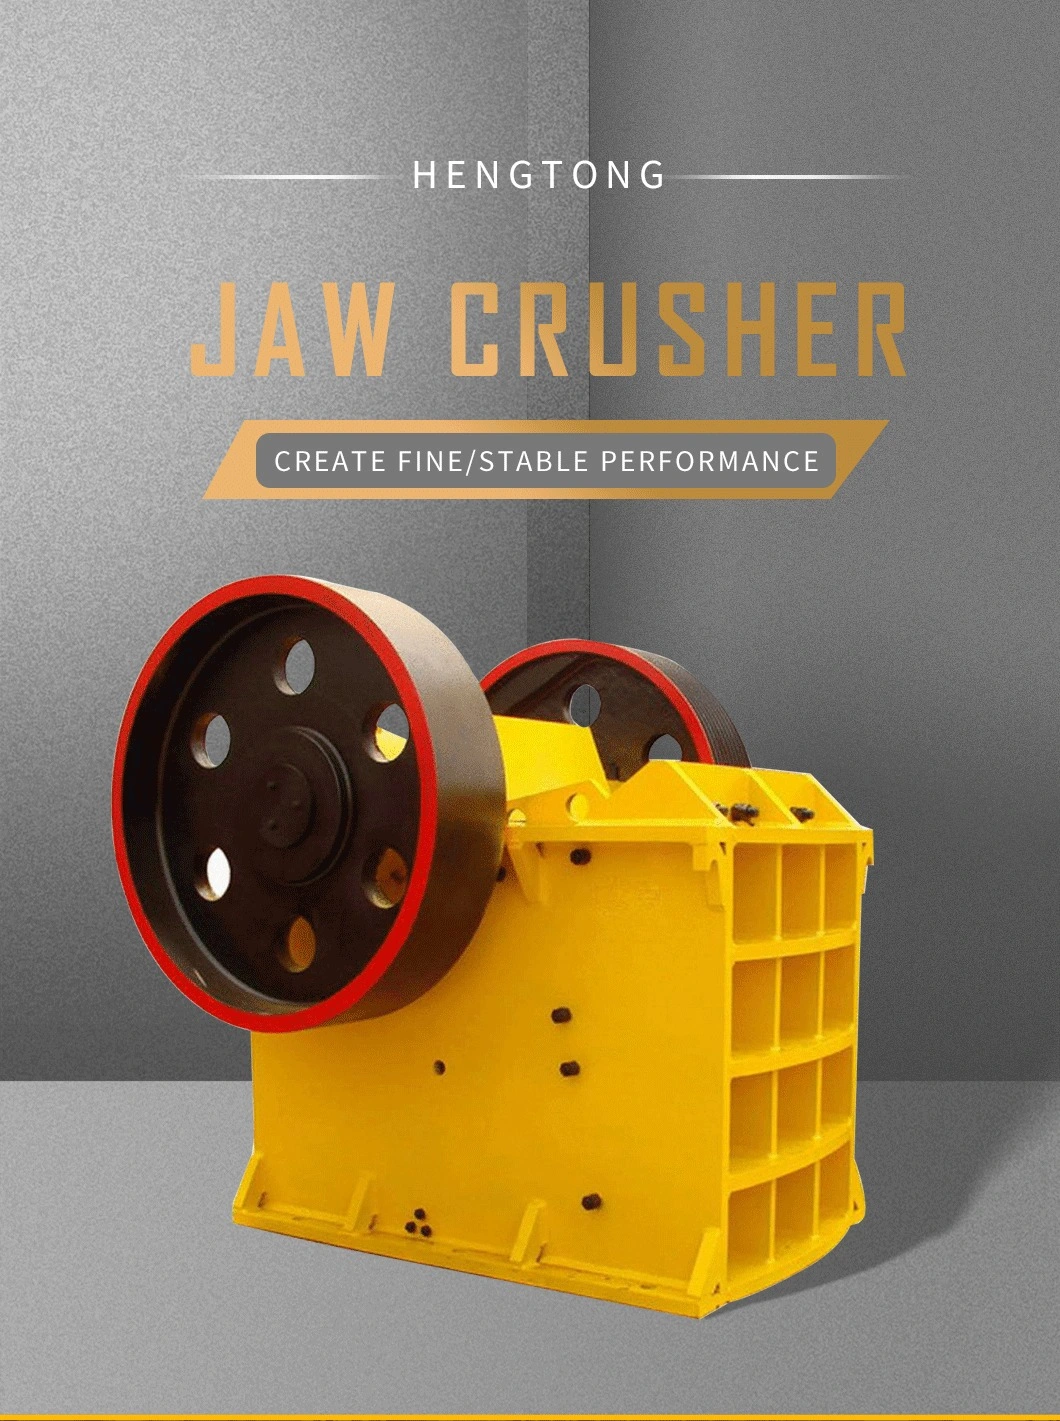 PE Small Coal Gangue Crusher Rock Crushing Crusher Jaw Series Crusher with Electric Motor